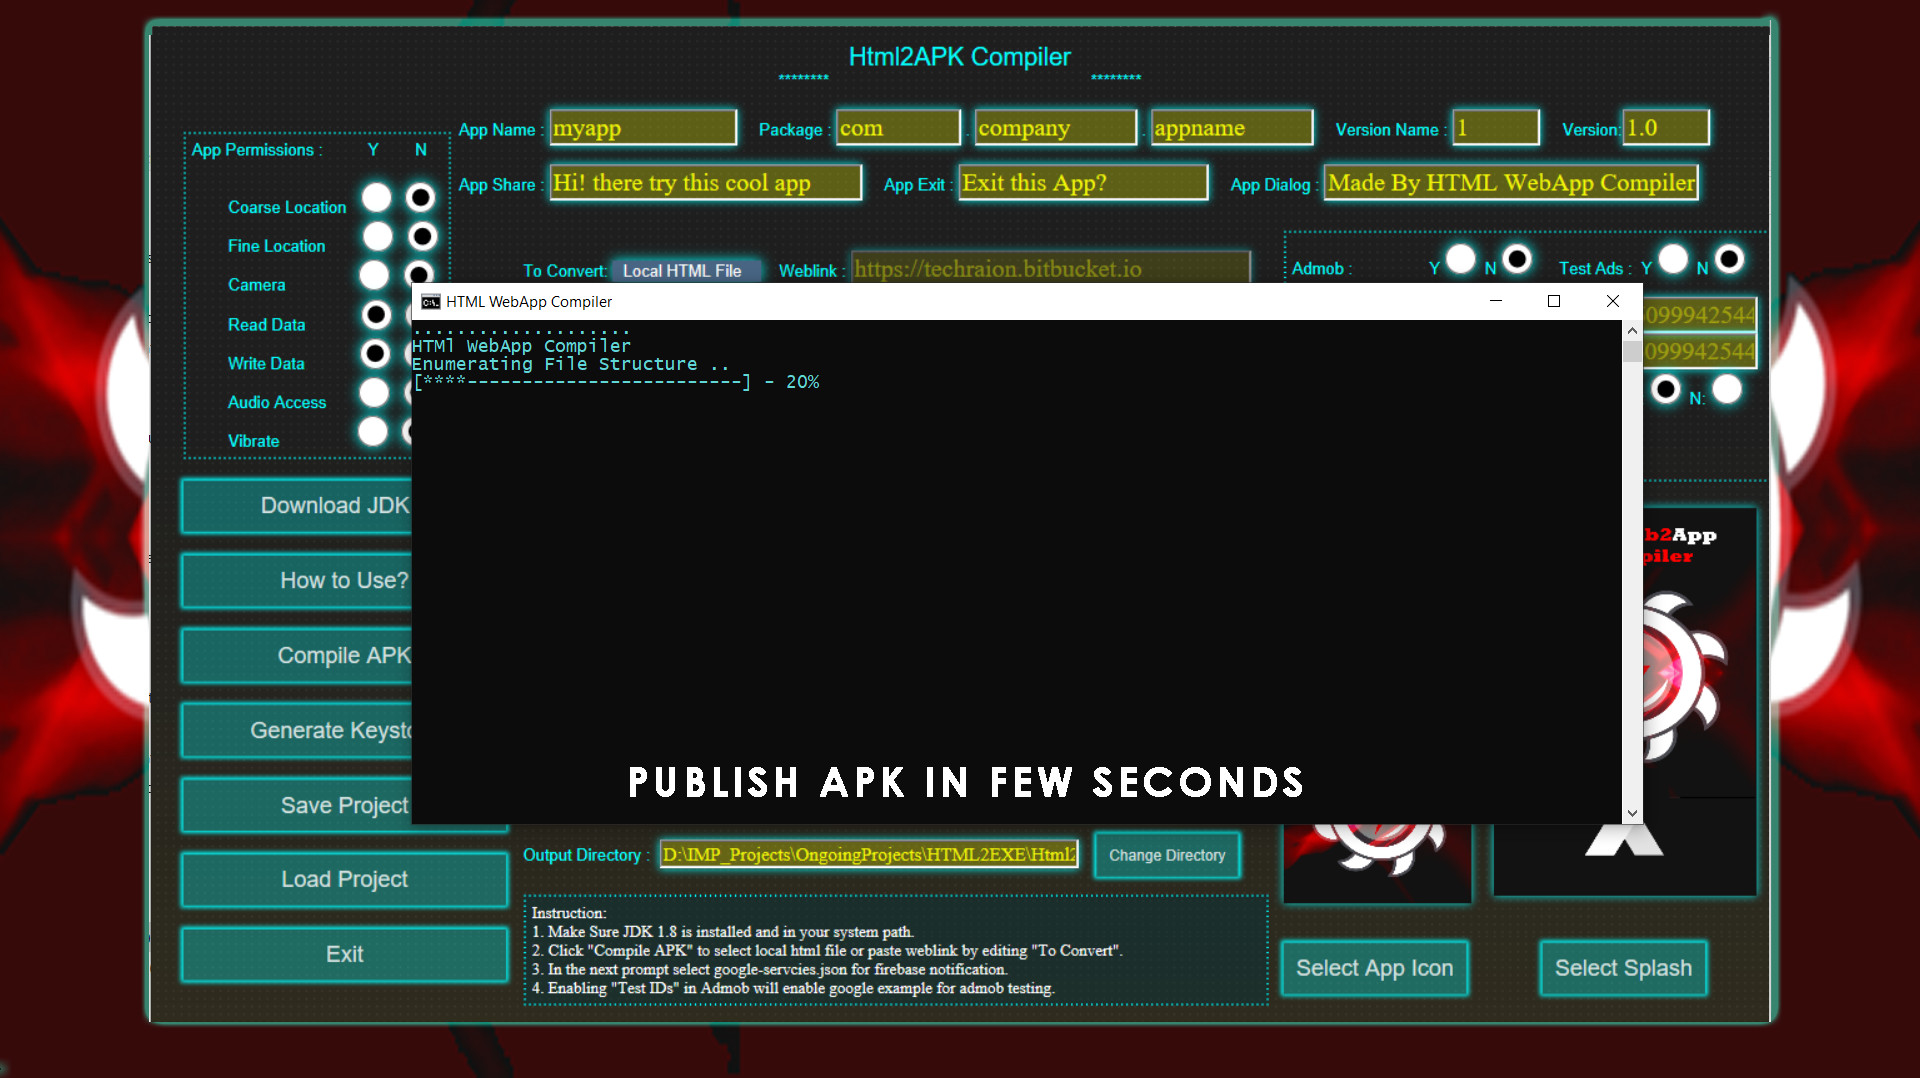 HTML 2 APK Compiler screenshot